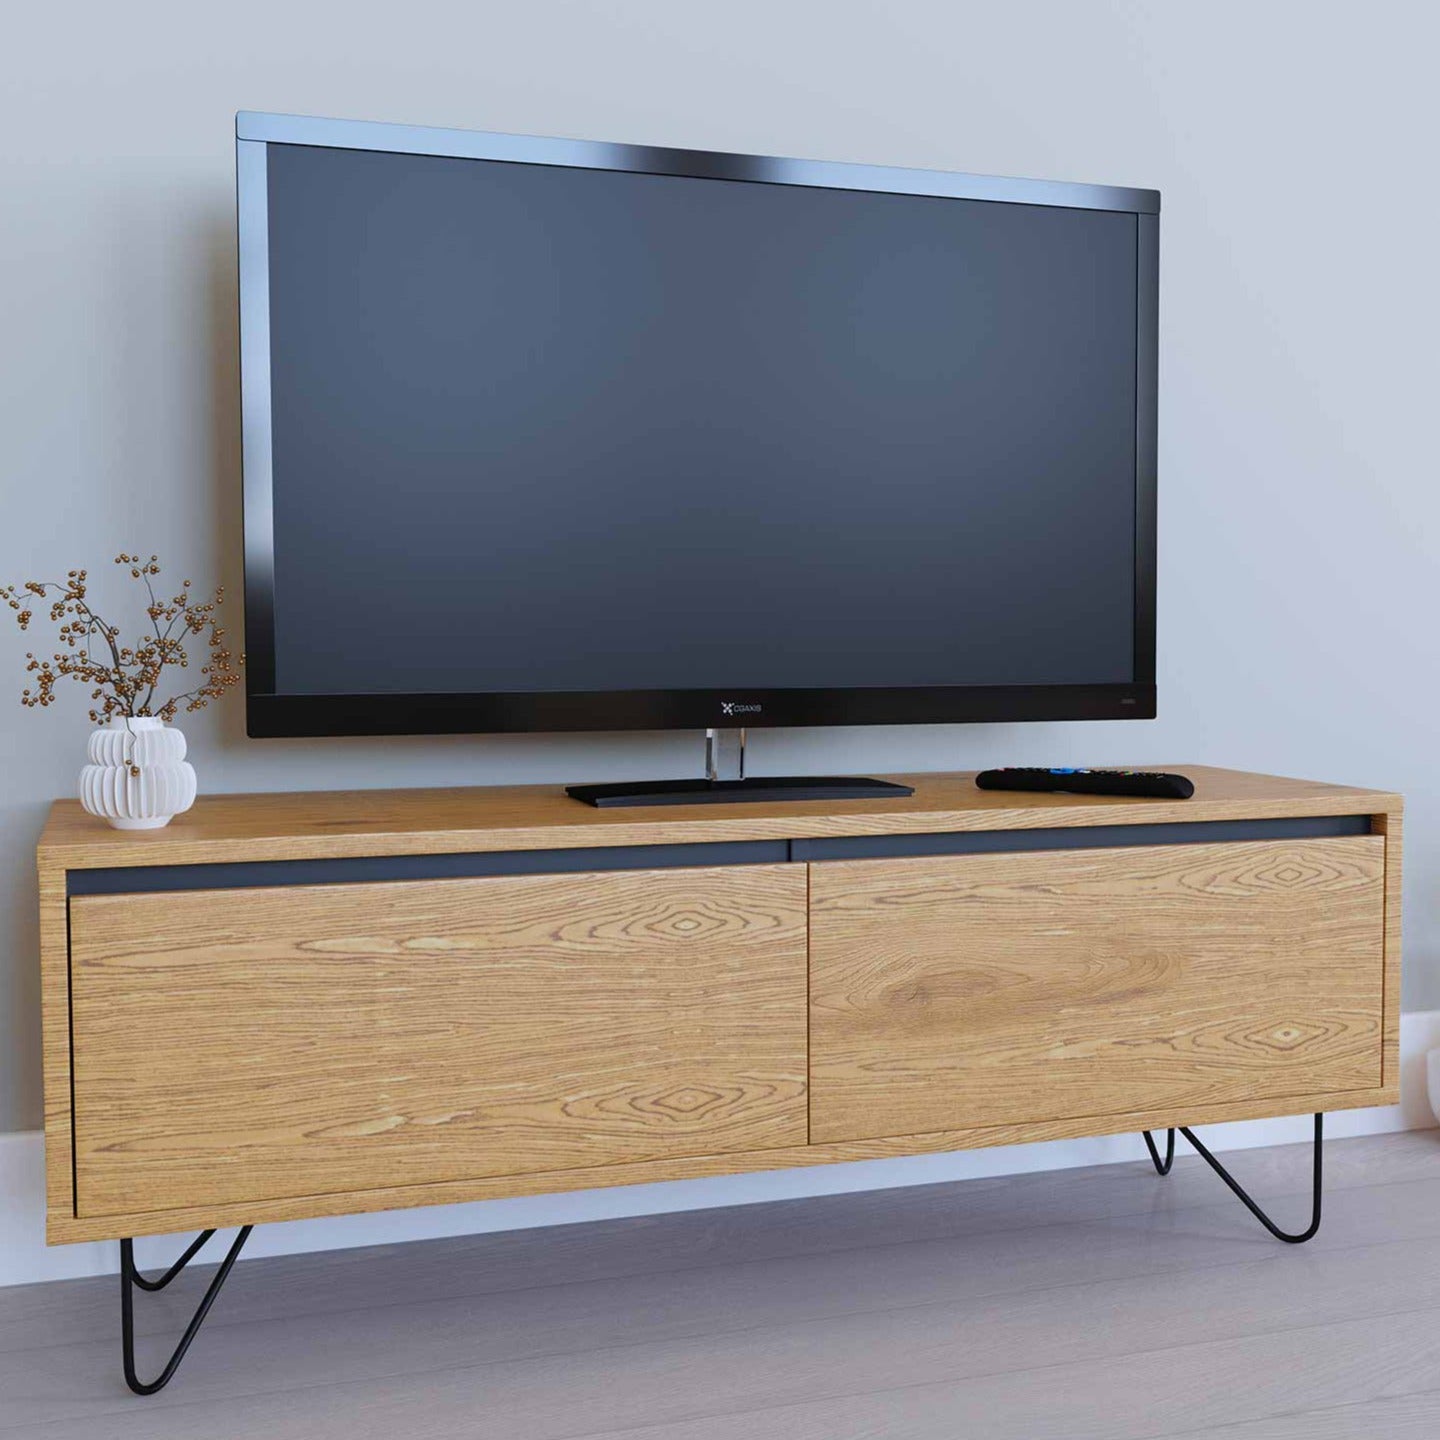 2306125222-meuble-tv-avec-1-tiroir-1-porte-darina-en-bois.jpg